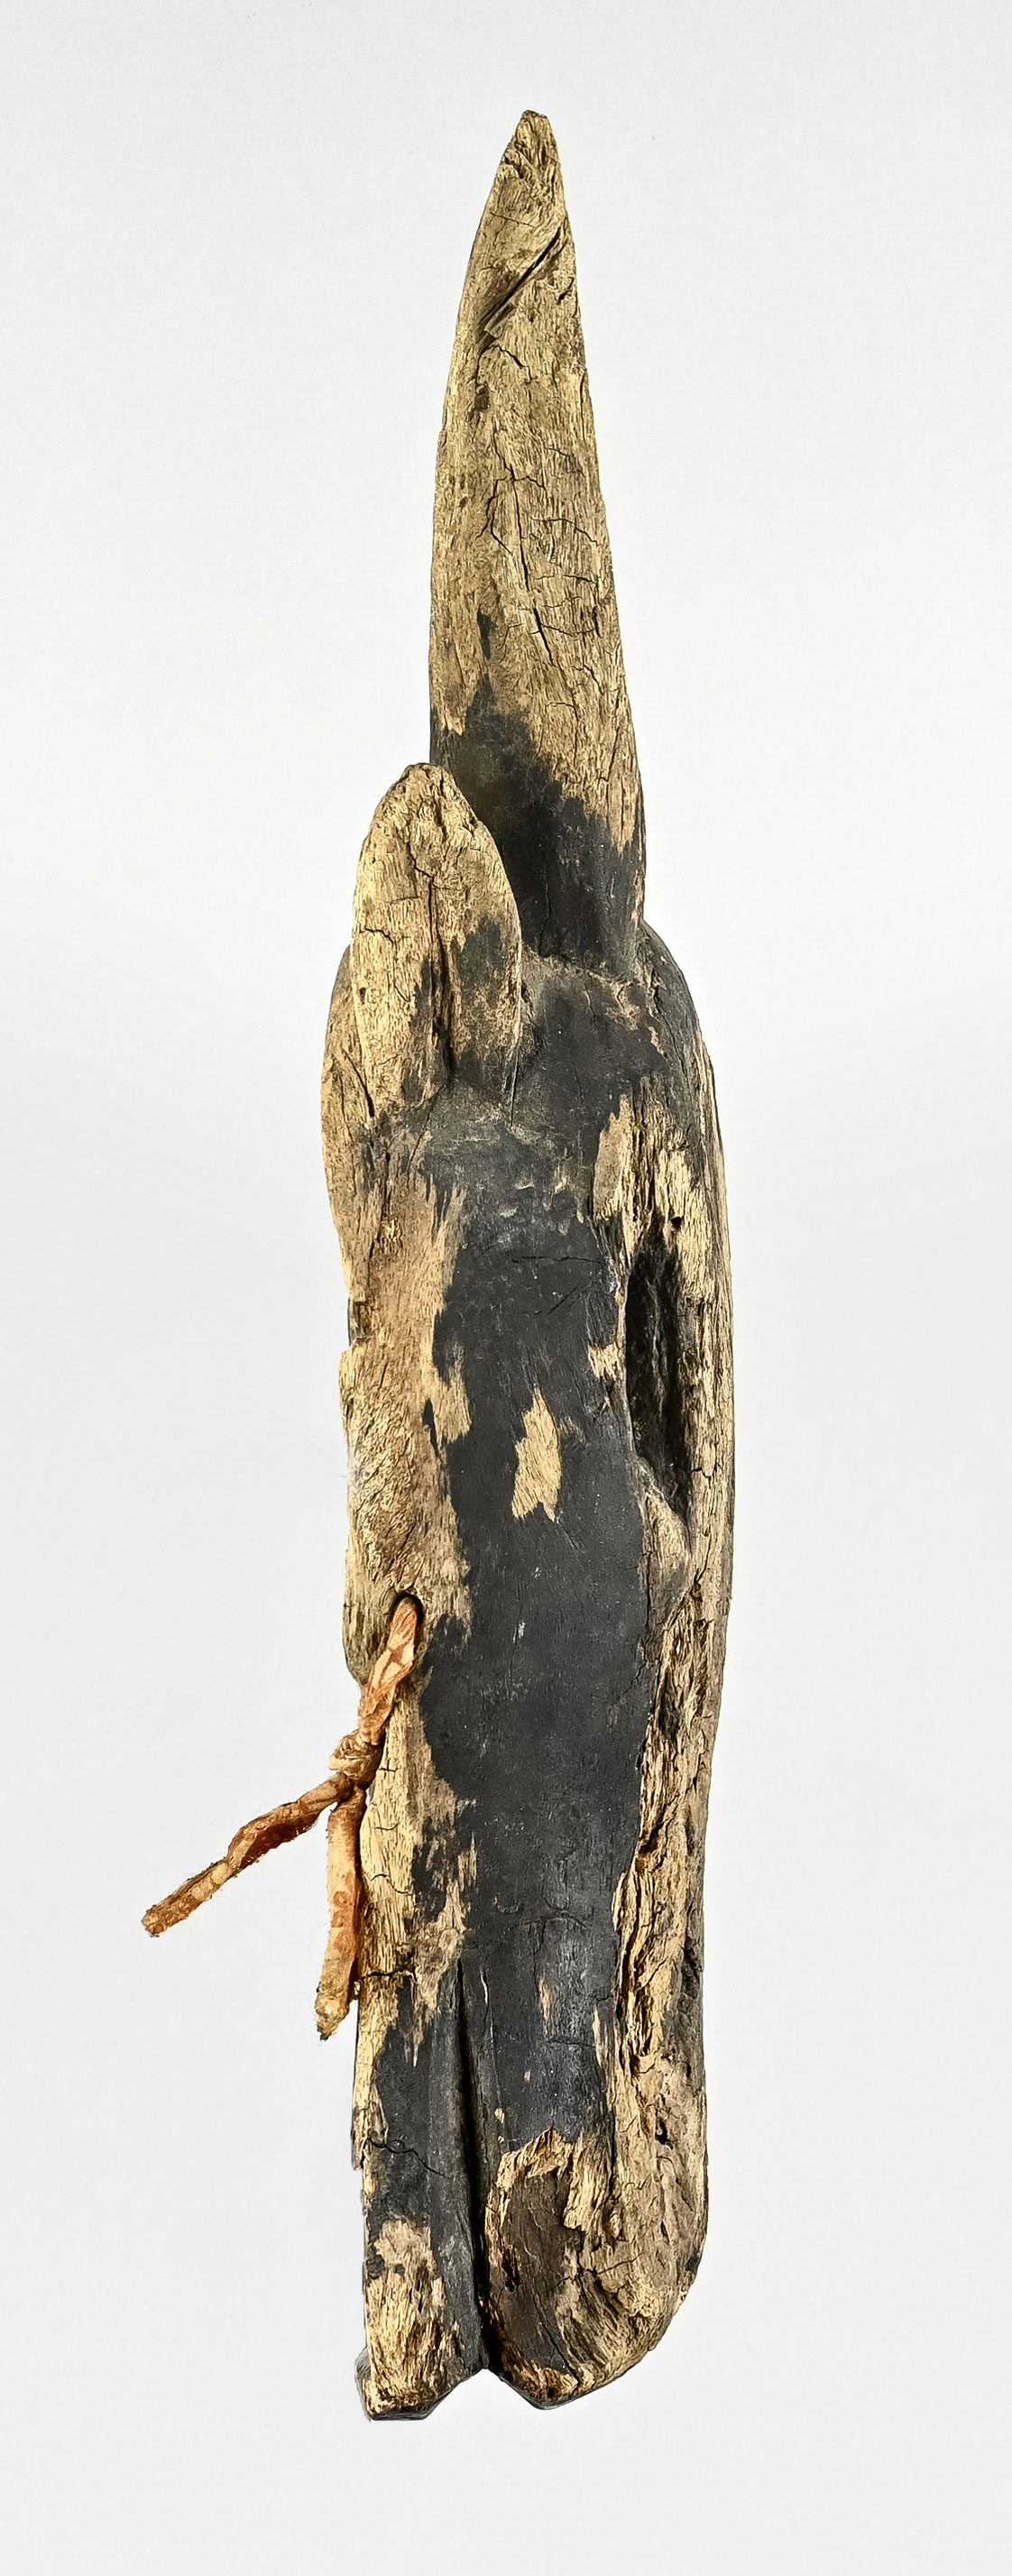 Gehörnte Tiermaske mit seitlichen Augen, Afrika, Höhe ca. 47 cm, starke Altersspuren. - Bild 2 aus 3